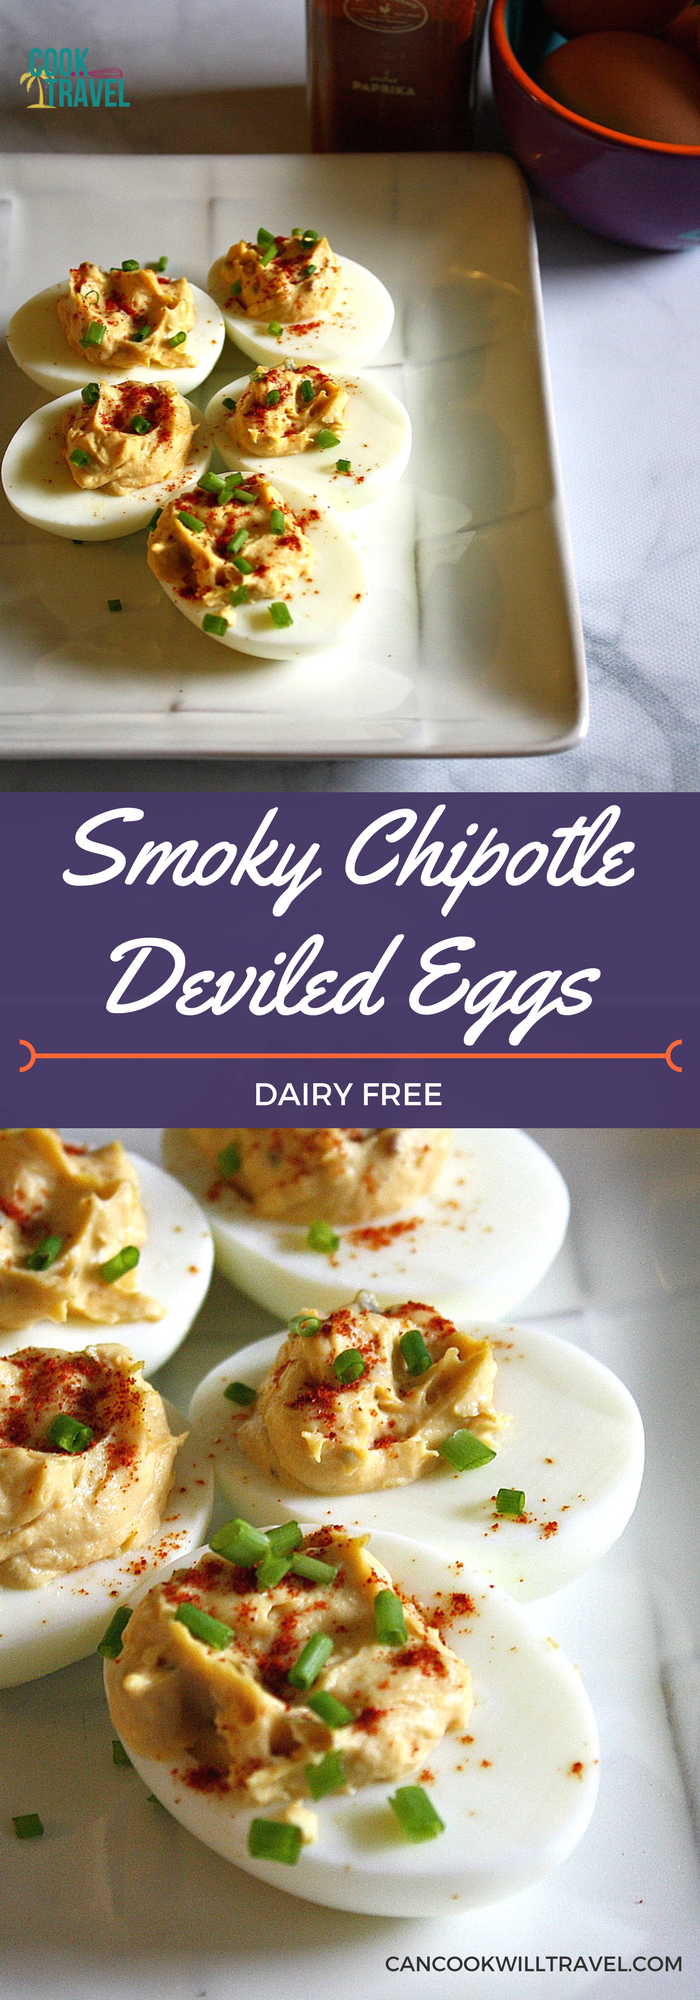 Smoky Deviled Eggs